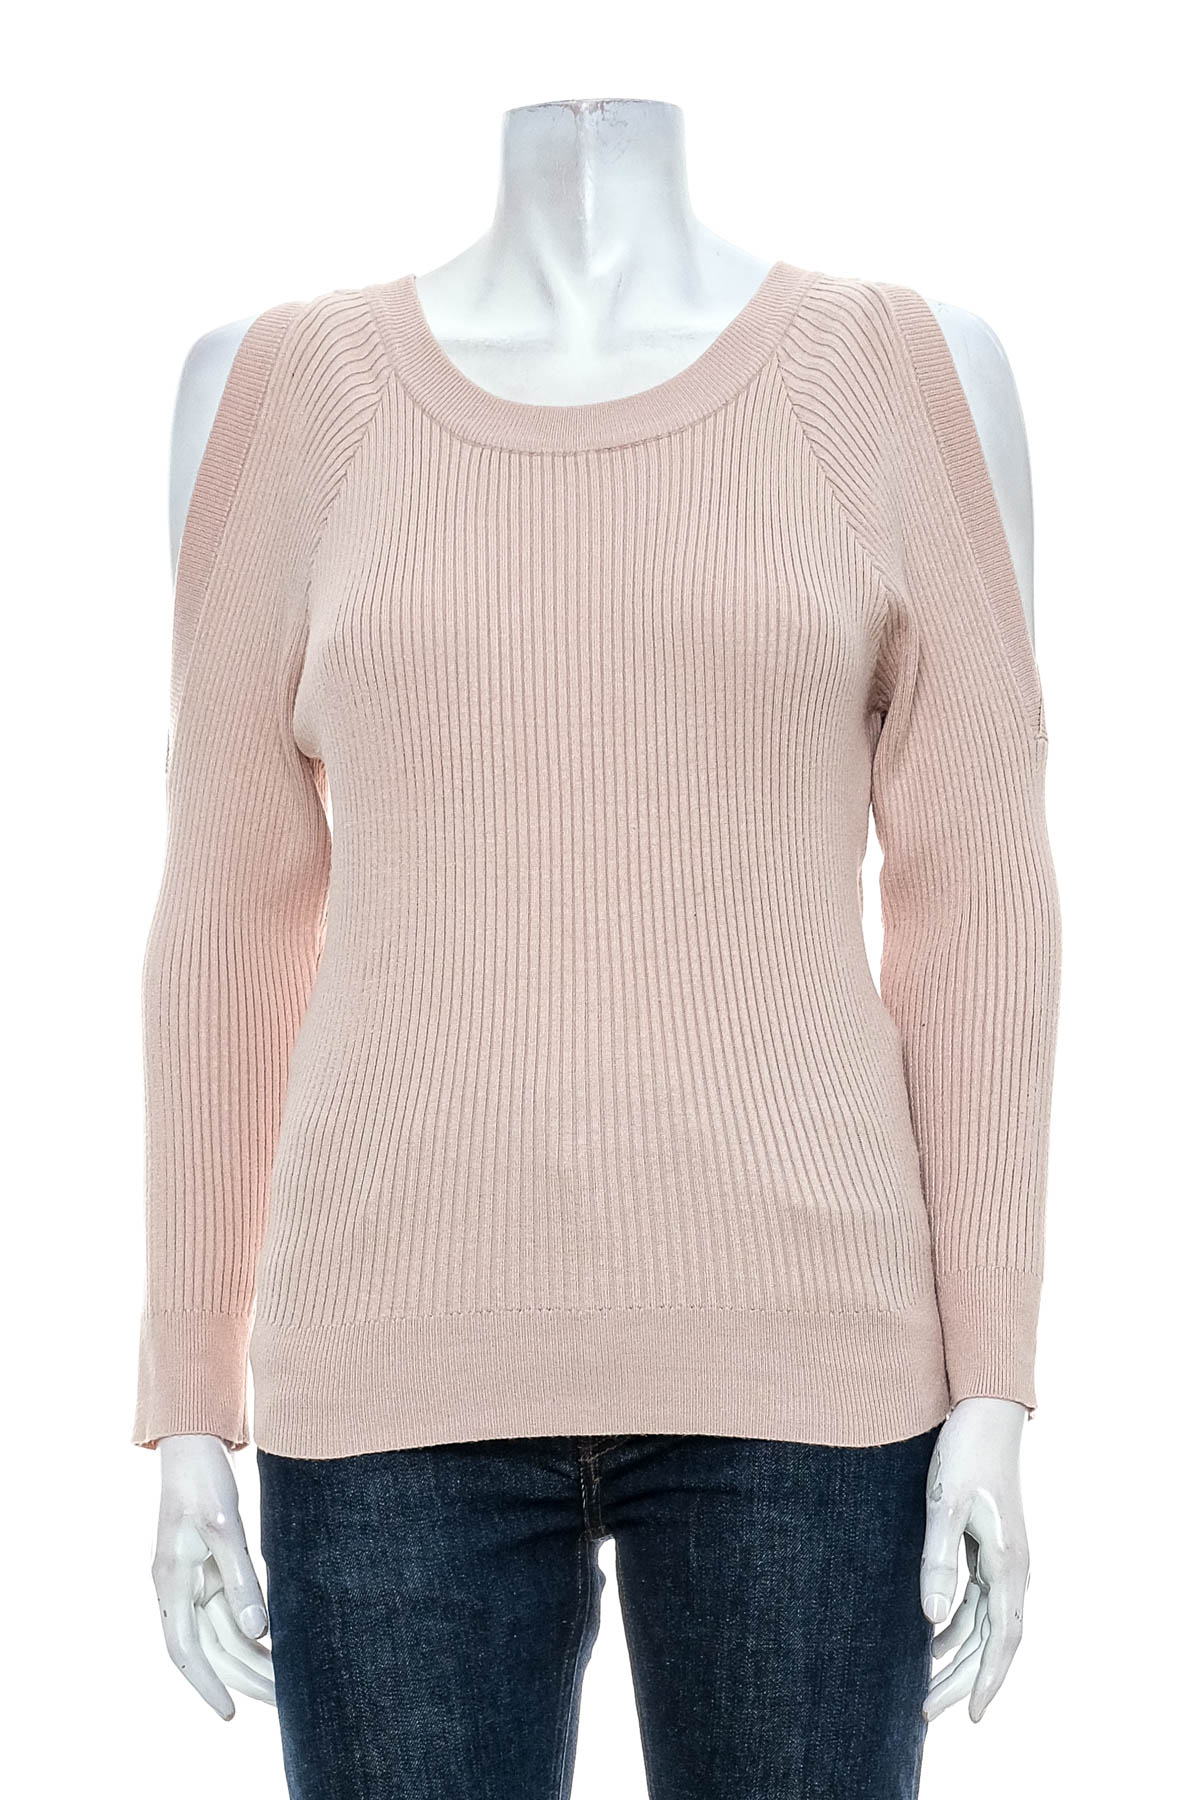 Women's sweater - JS MILLENIUM - 0